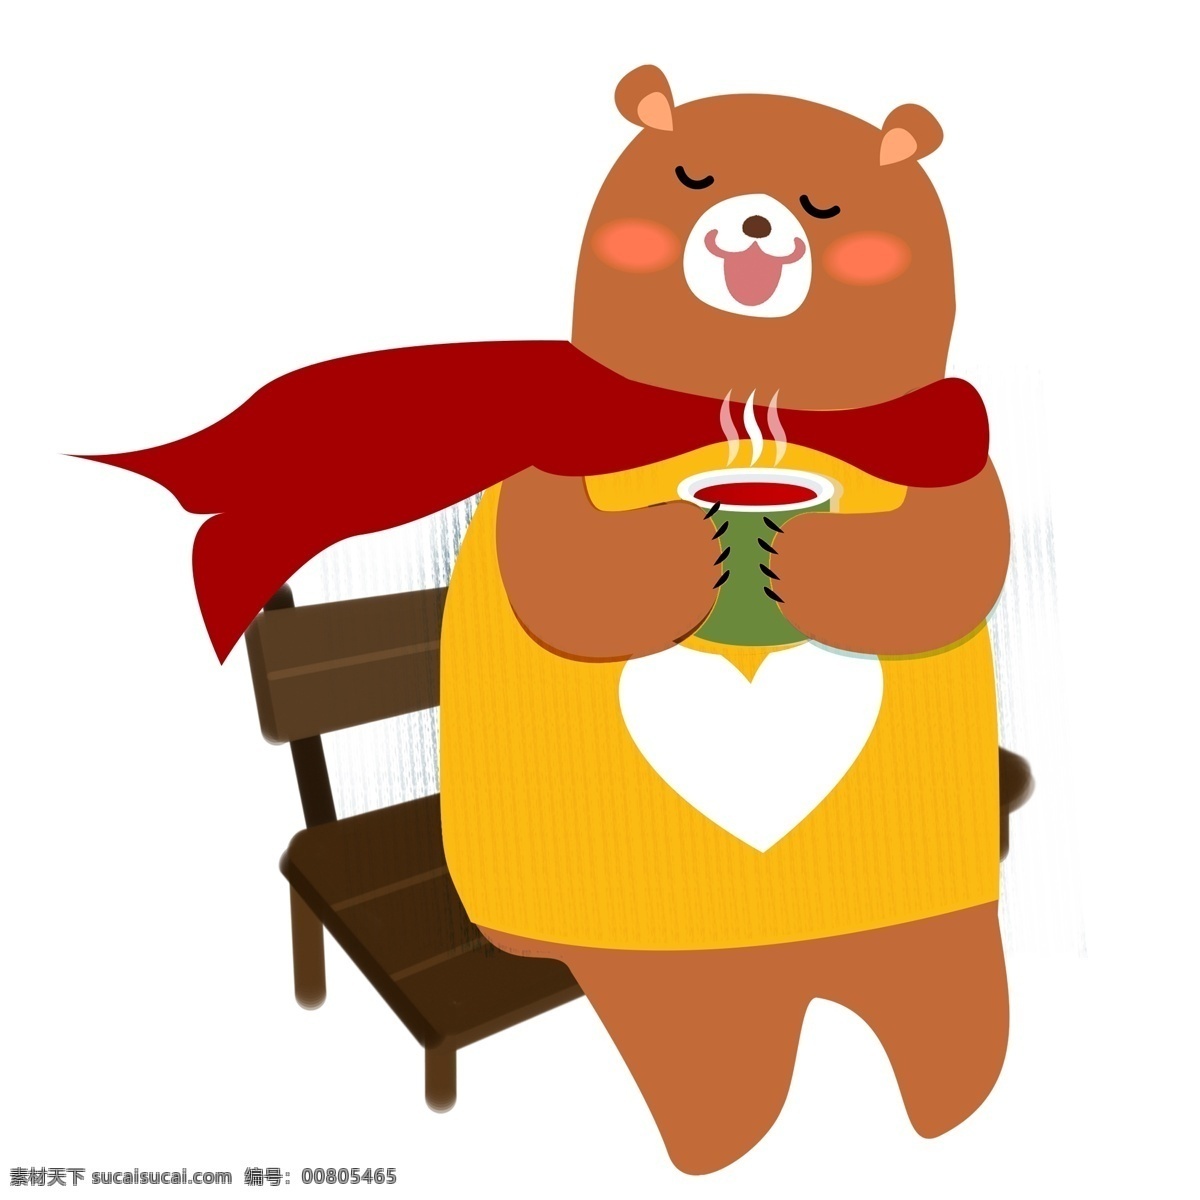 坐在 椅子 上 喝 热茶 小 熊 商用 元素 卡通 创意 插画 动物 冬季 手绘 小熊 喝茶 长椅